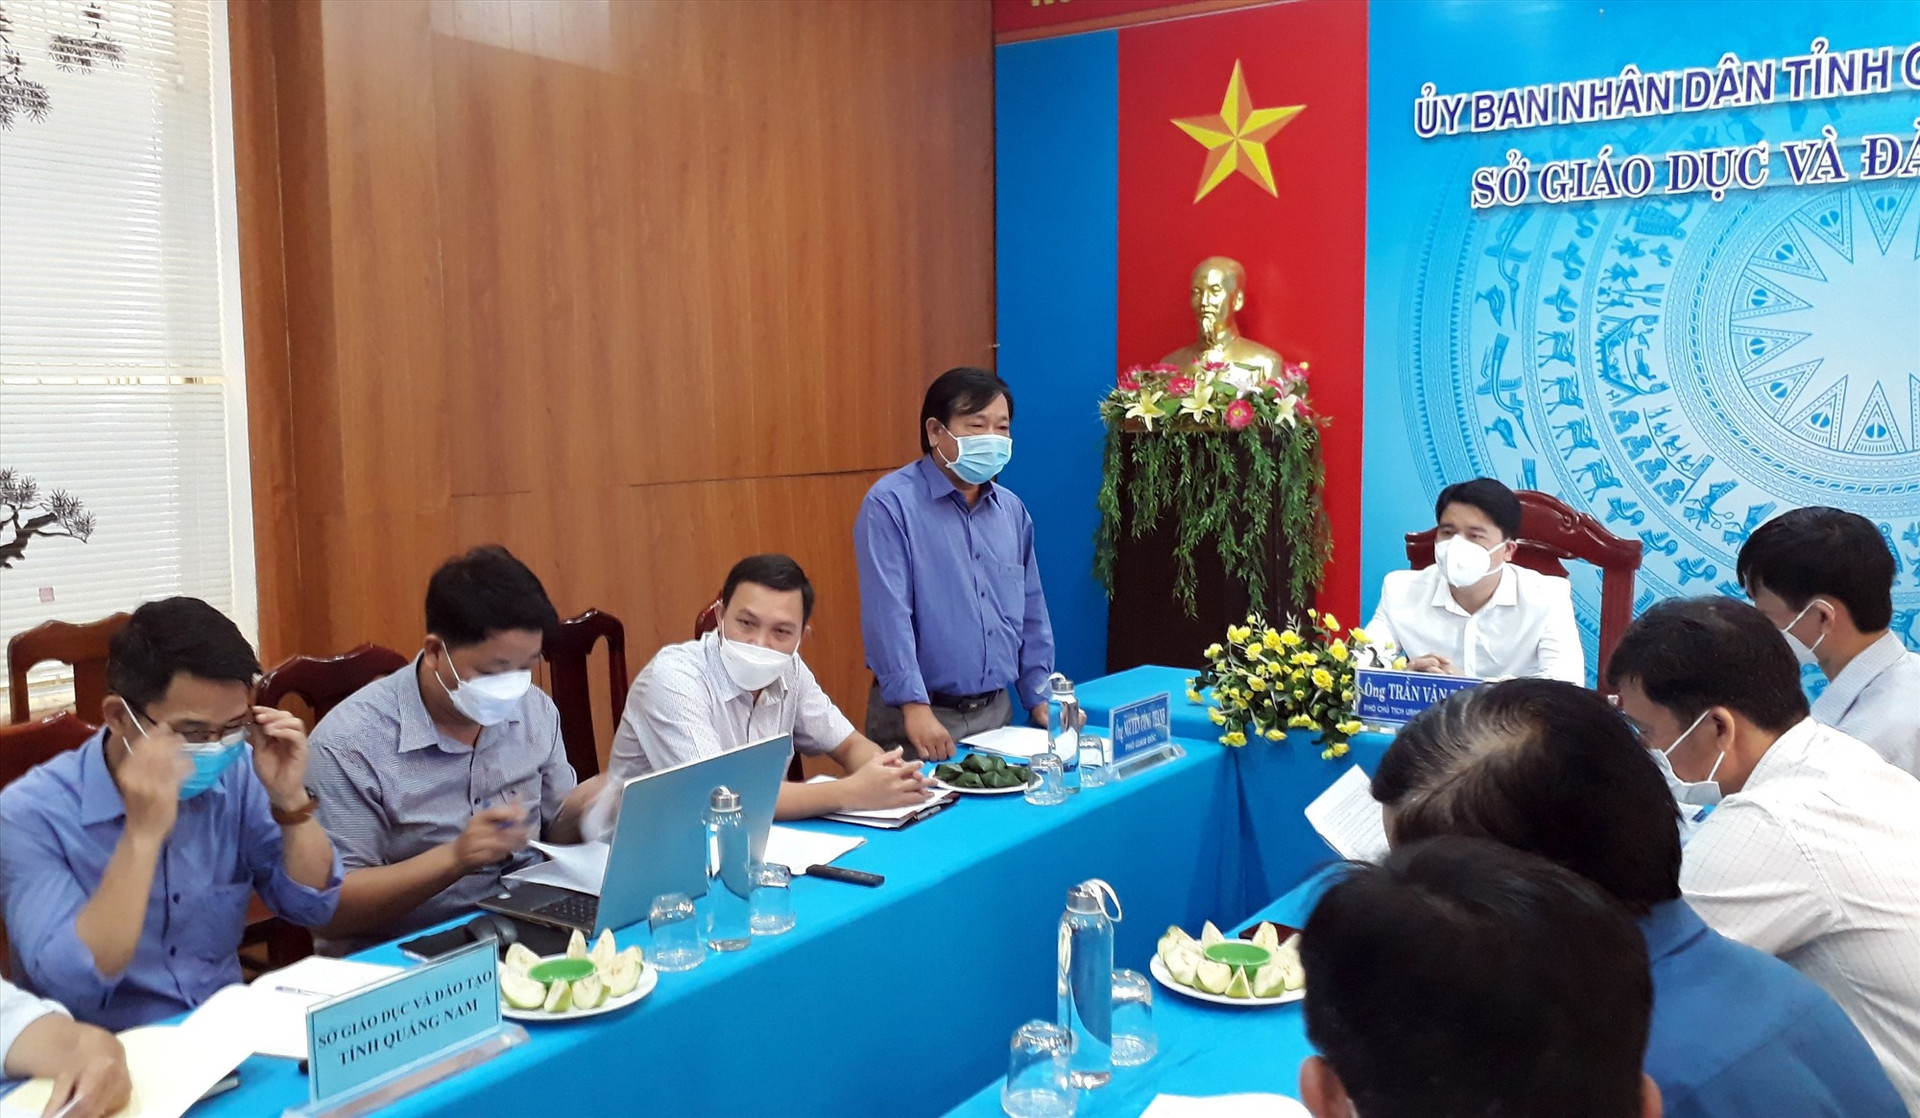 Phó Giám đốc Sở GD-ĐT Nguyễn Công Thành báo cáo với UBND tỉnh những khó khăn trong việc tuyển dụng con người tại sở. Ảnh: X.P